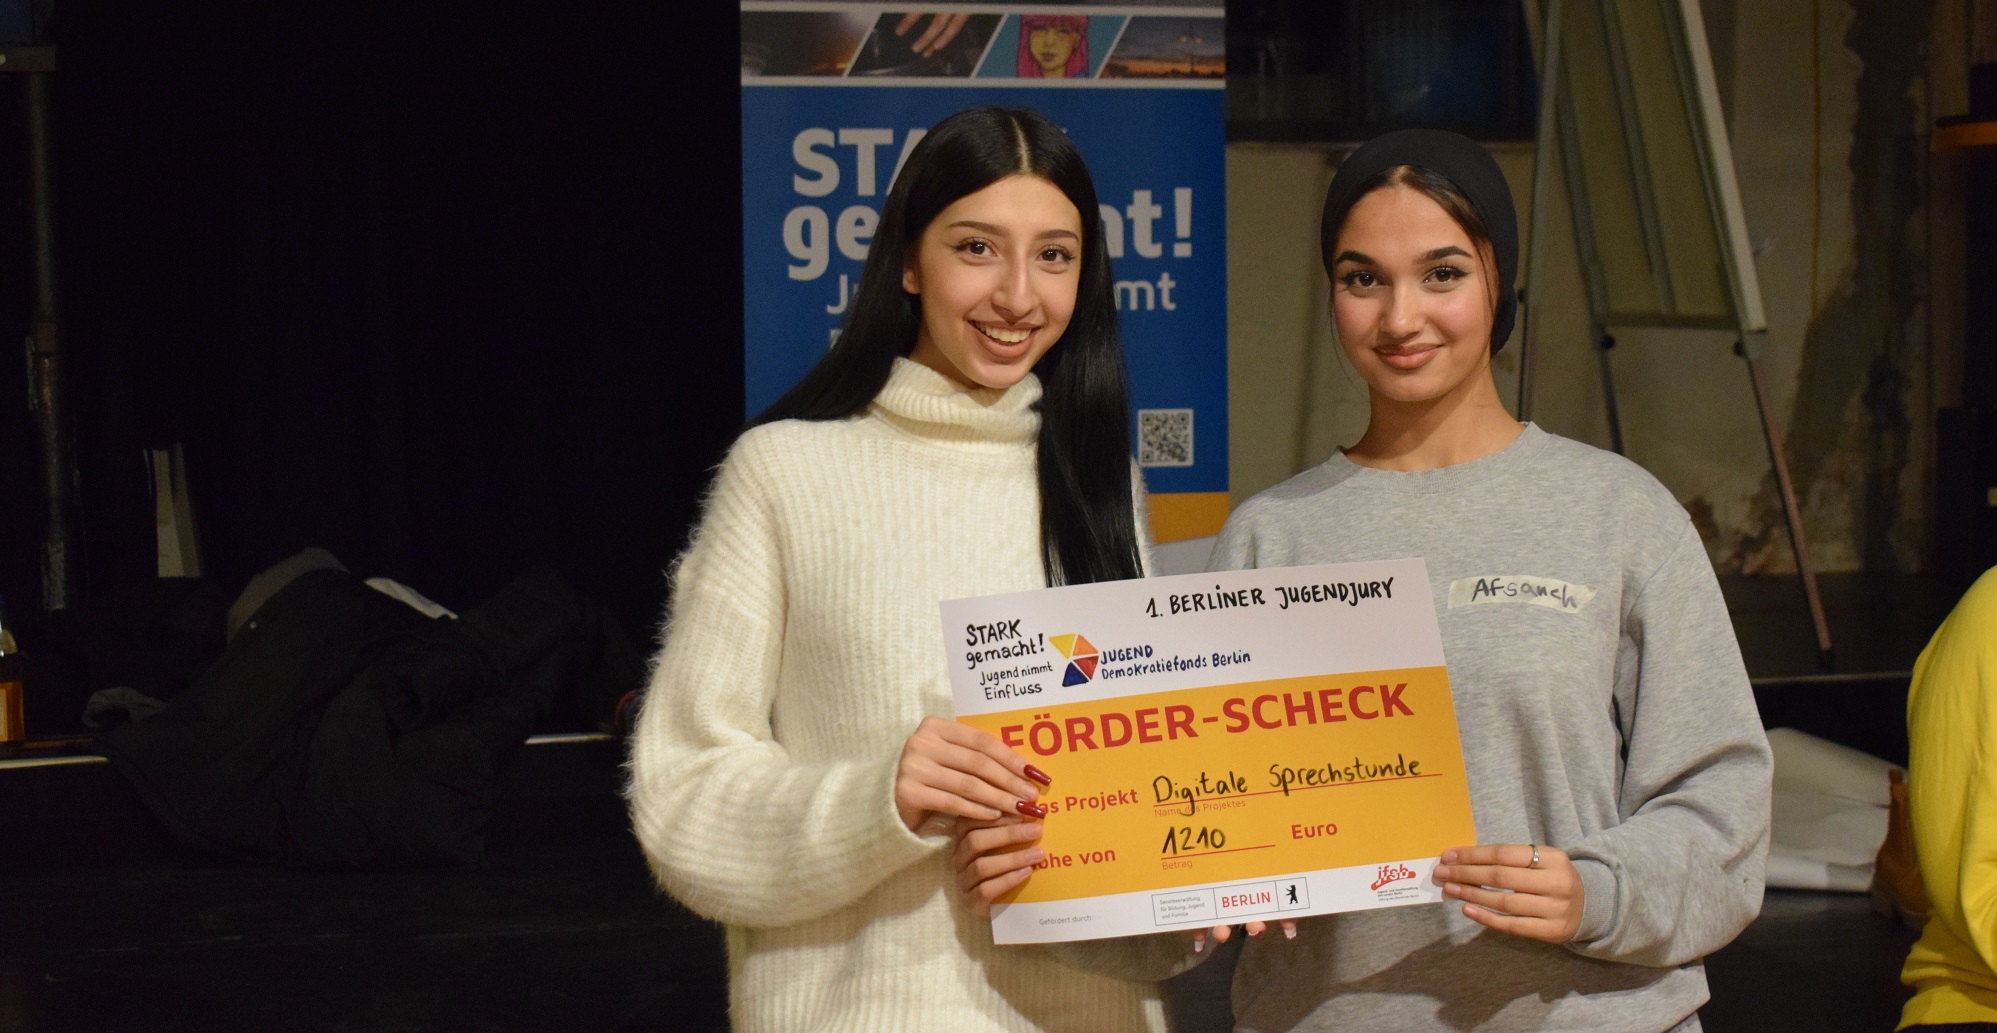 Zwei junge Menschen halten den Check für das Projekt "Digitale Sprechstunde" in den Händen